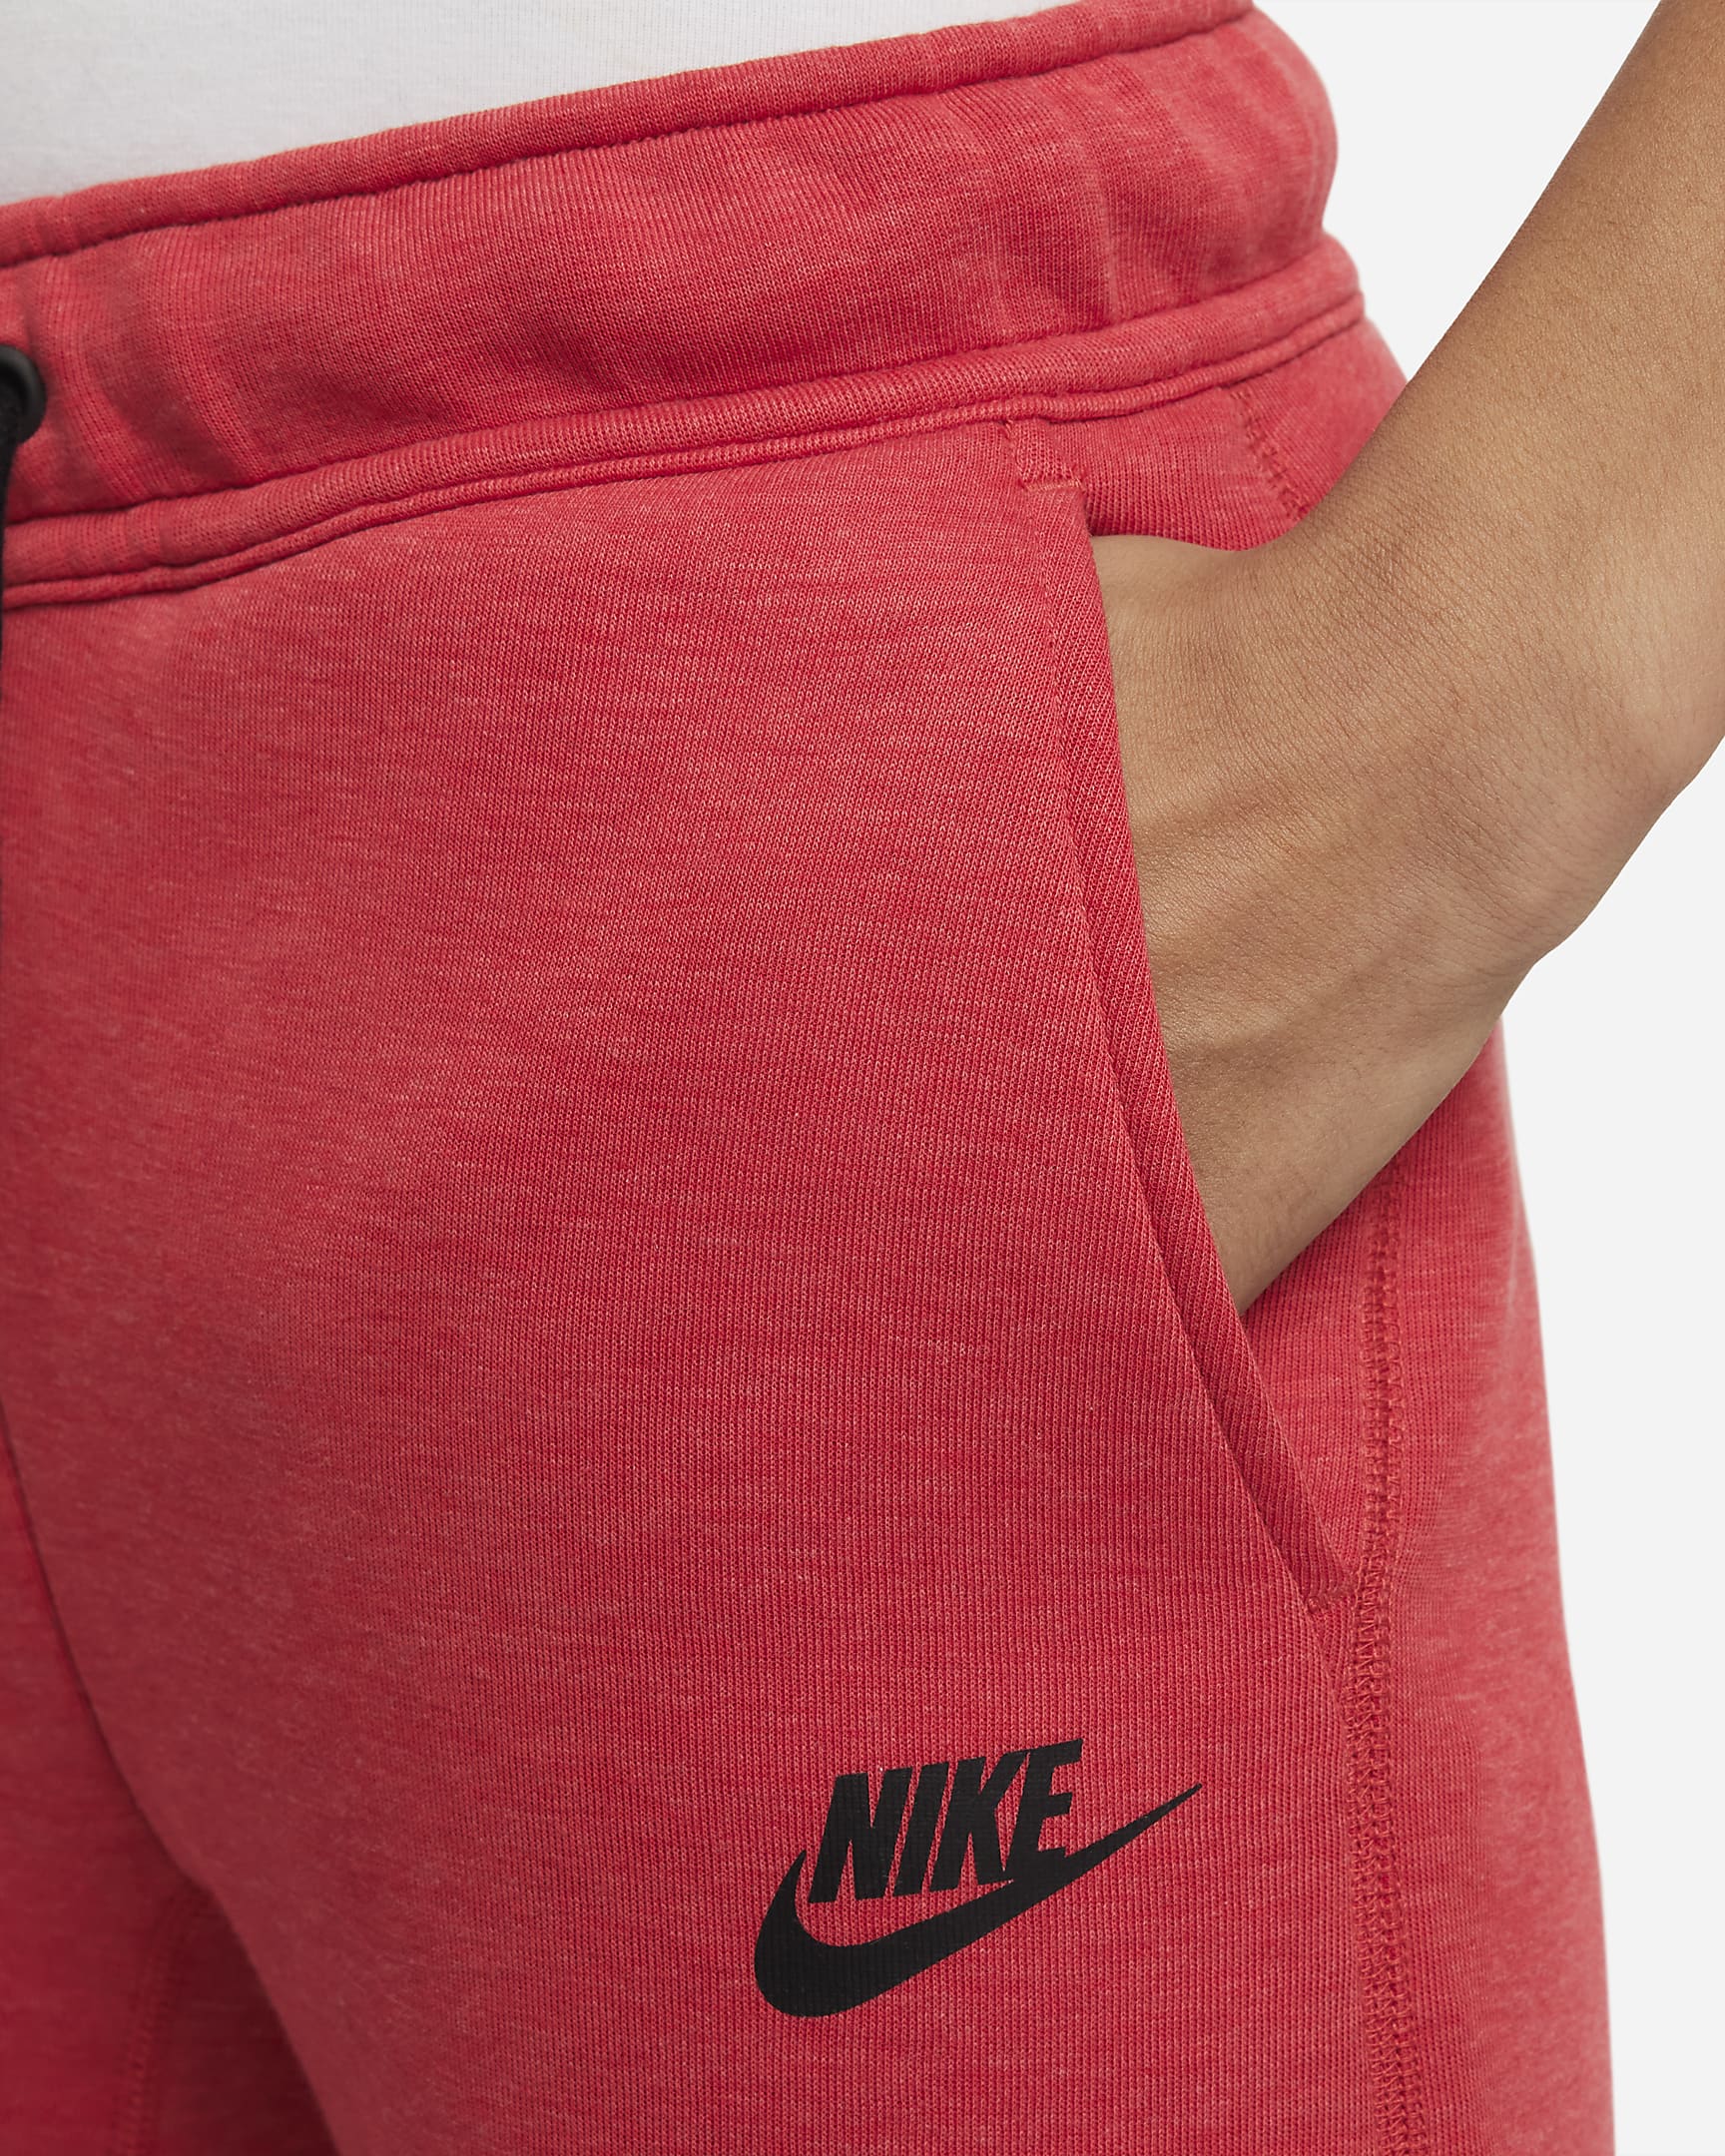 Nike Sportswear Tech Fleece Older Kids' (Boys') Trousers - Light University Red Heather/Black/Black